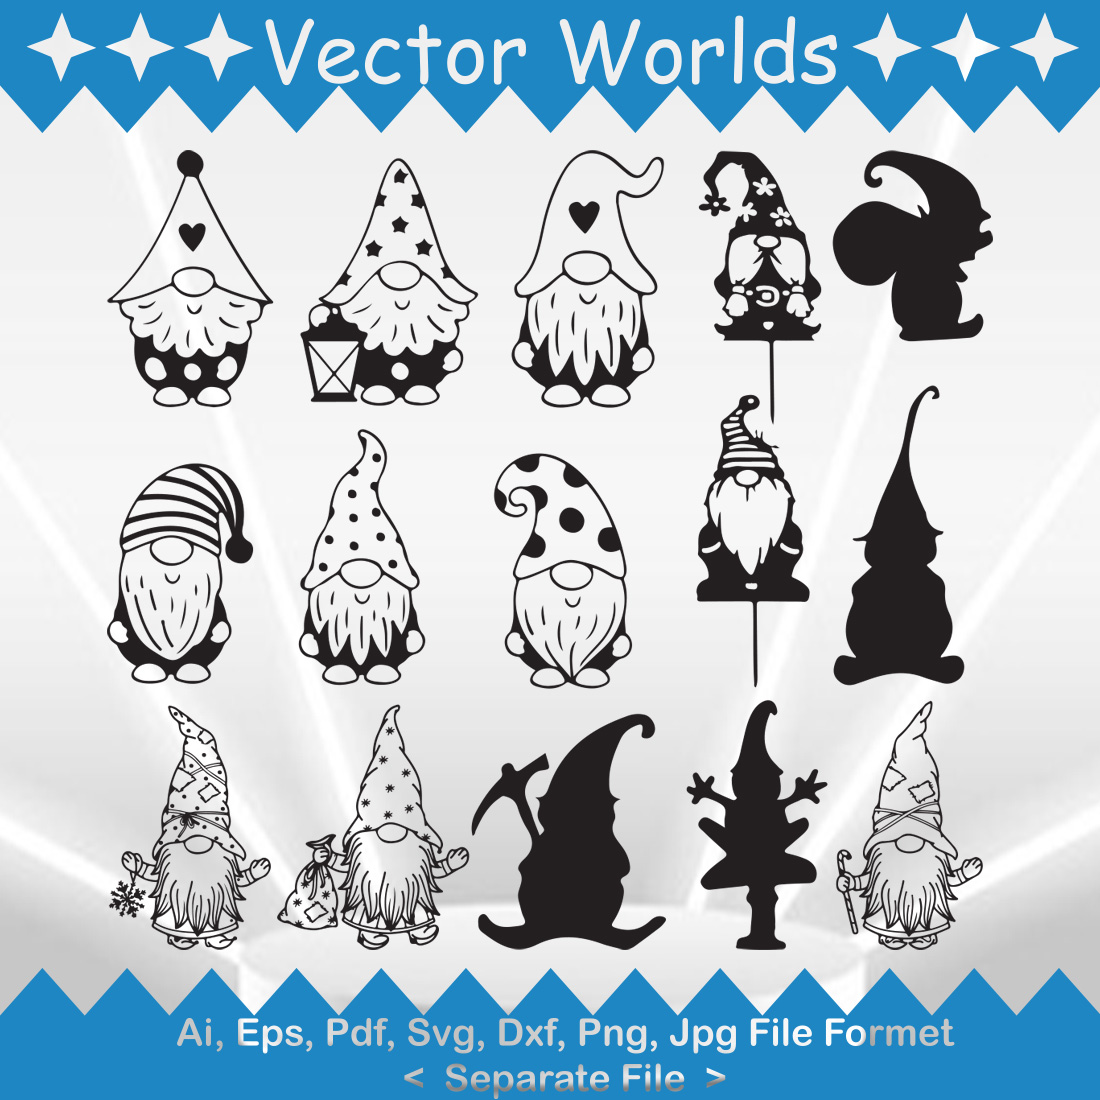 Gnome SVG Vector Design cover image.